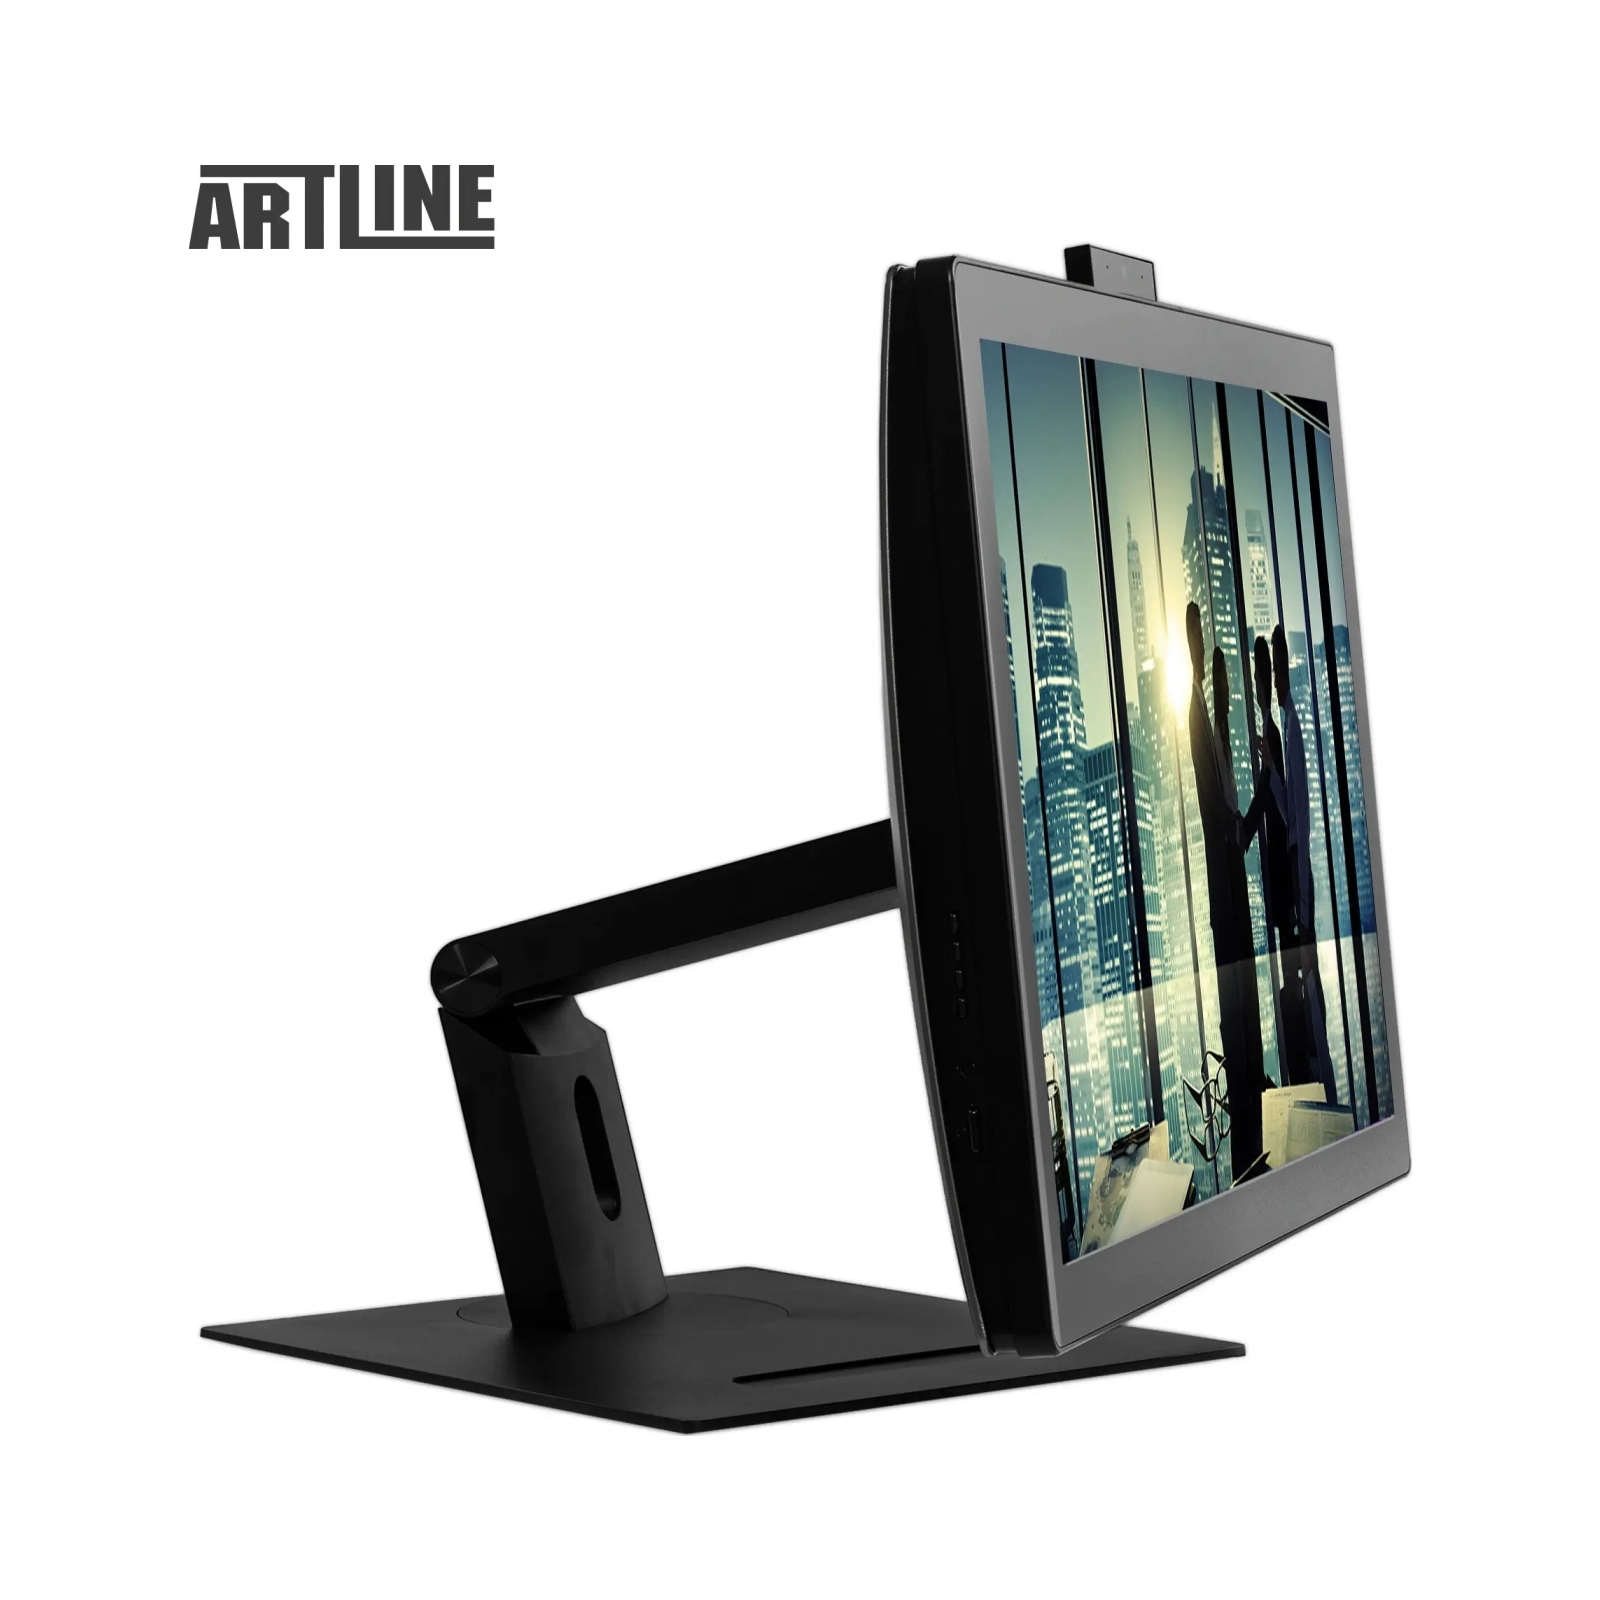 Компьютер Artline Business GT41 (GT41v01) изображение 10